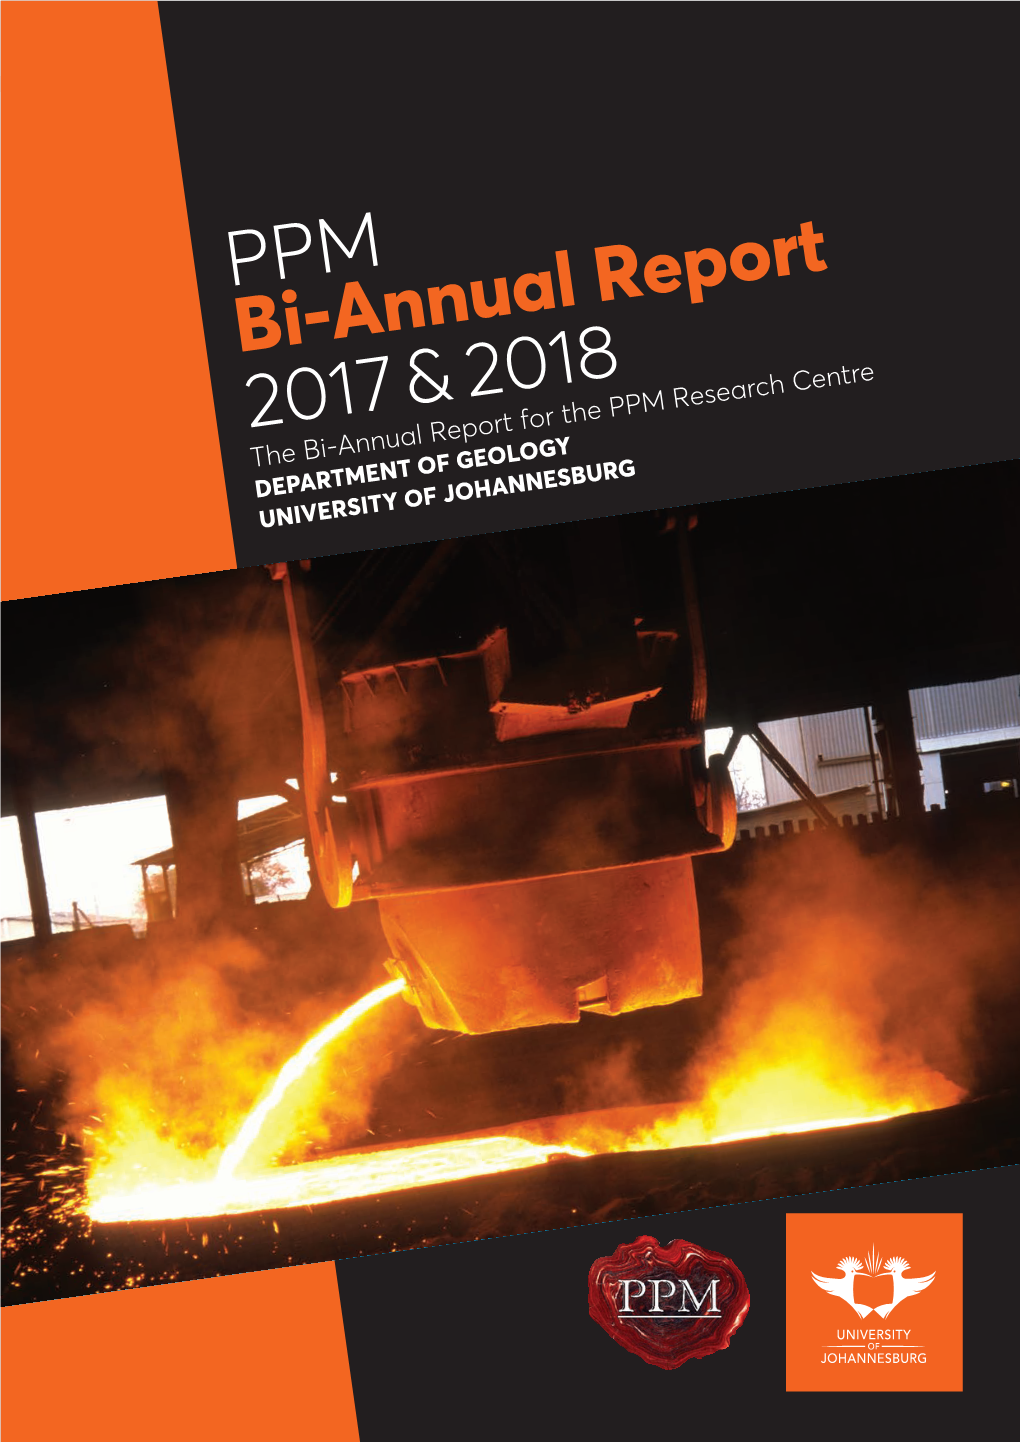 PPM Bi-Annual Report 2017 & 2018